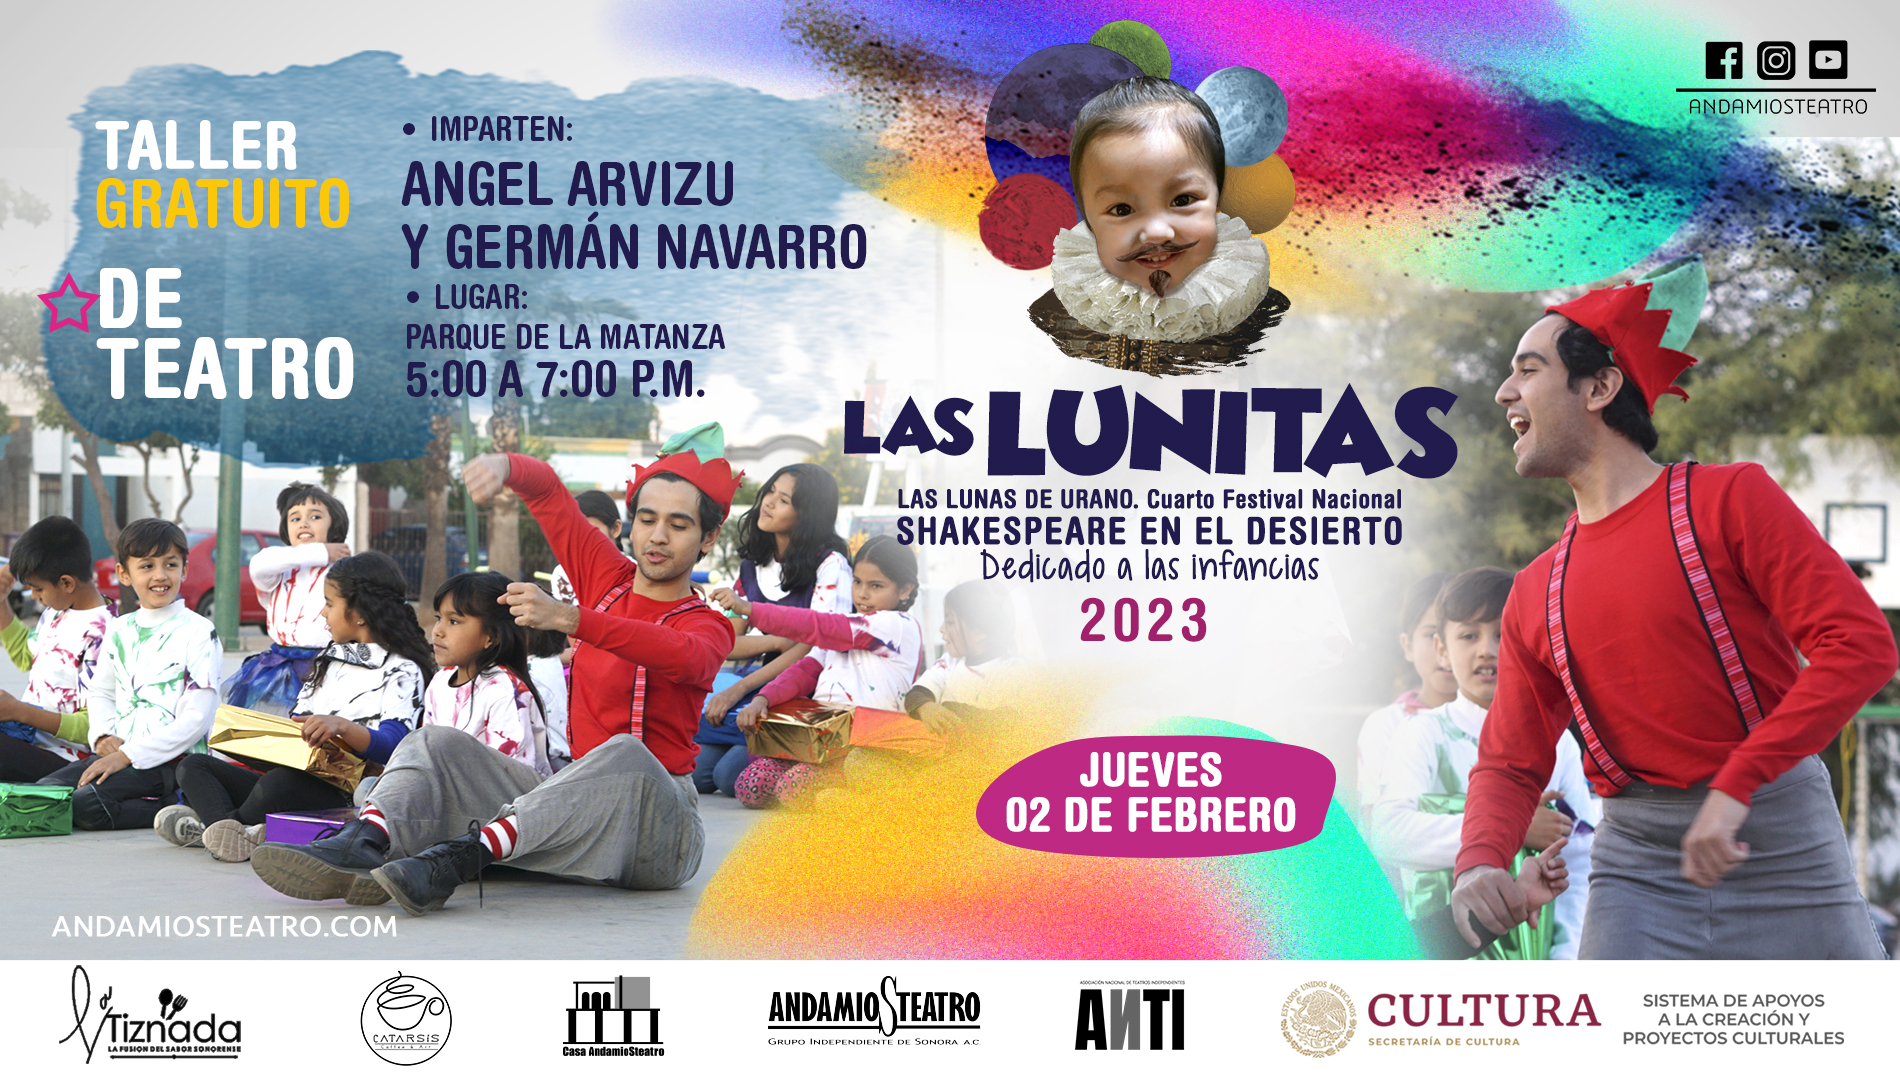 6 Eventos Las Lunitas_Taller Teatro